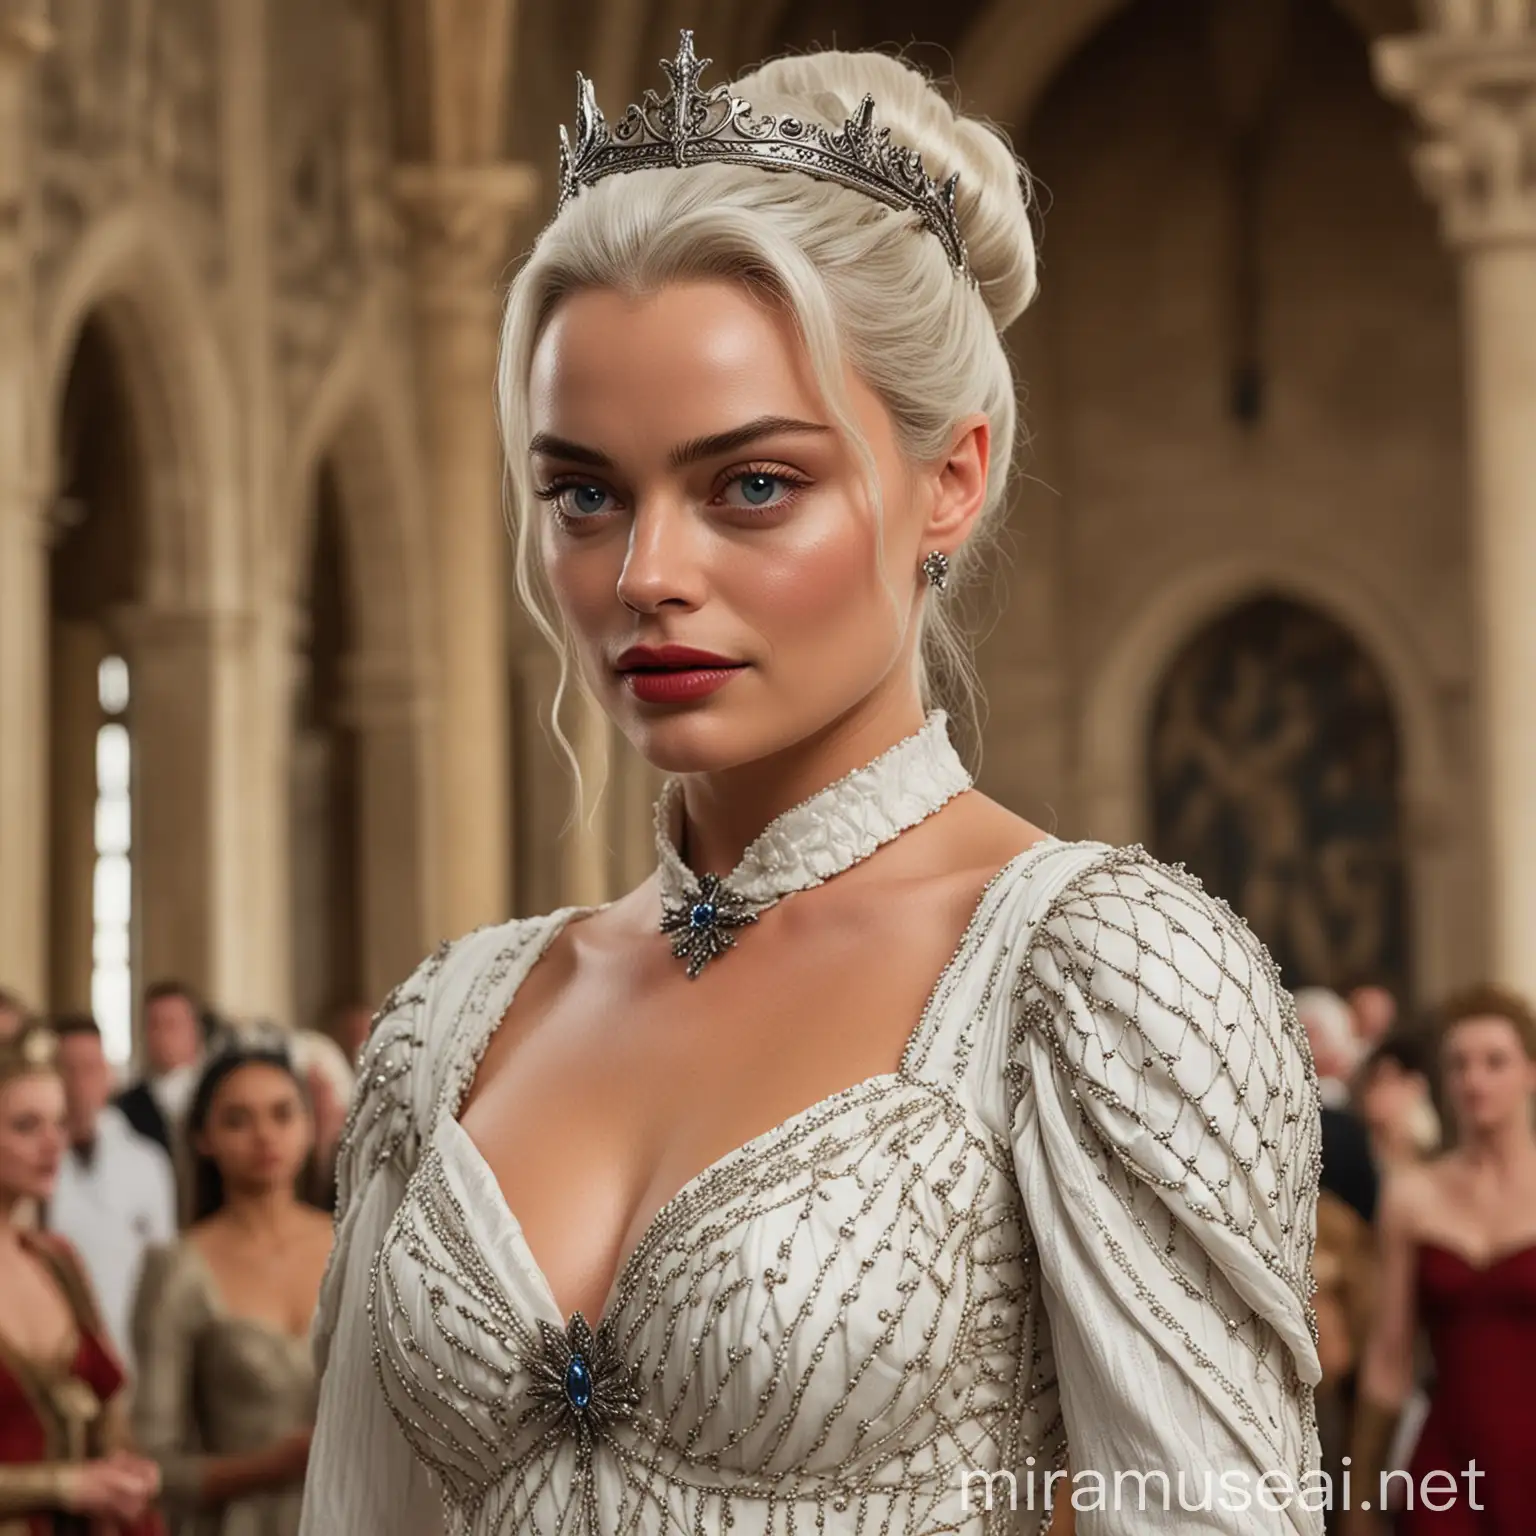 Margot Robbie en tant que princesse de la Maison Targaryen de l'Ancienne Valyria aux yeux clairs avec des cheveux blancs-argentés attachés en un chignon élégant tressé avec une fine couronne doré et rouge, portant une longue robe blanche élégante avec des détails d'écailles de dragons avec les épaules tombantes, dansant majestueusement dans la grande salle du château, tous les invités du royaume l'observant avec admiration 